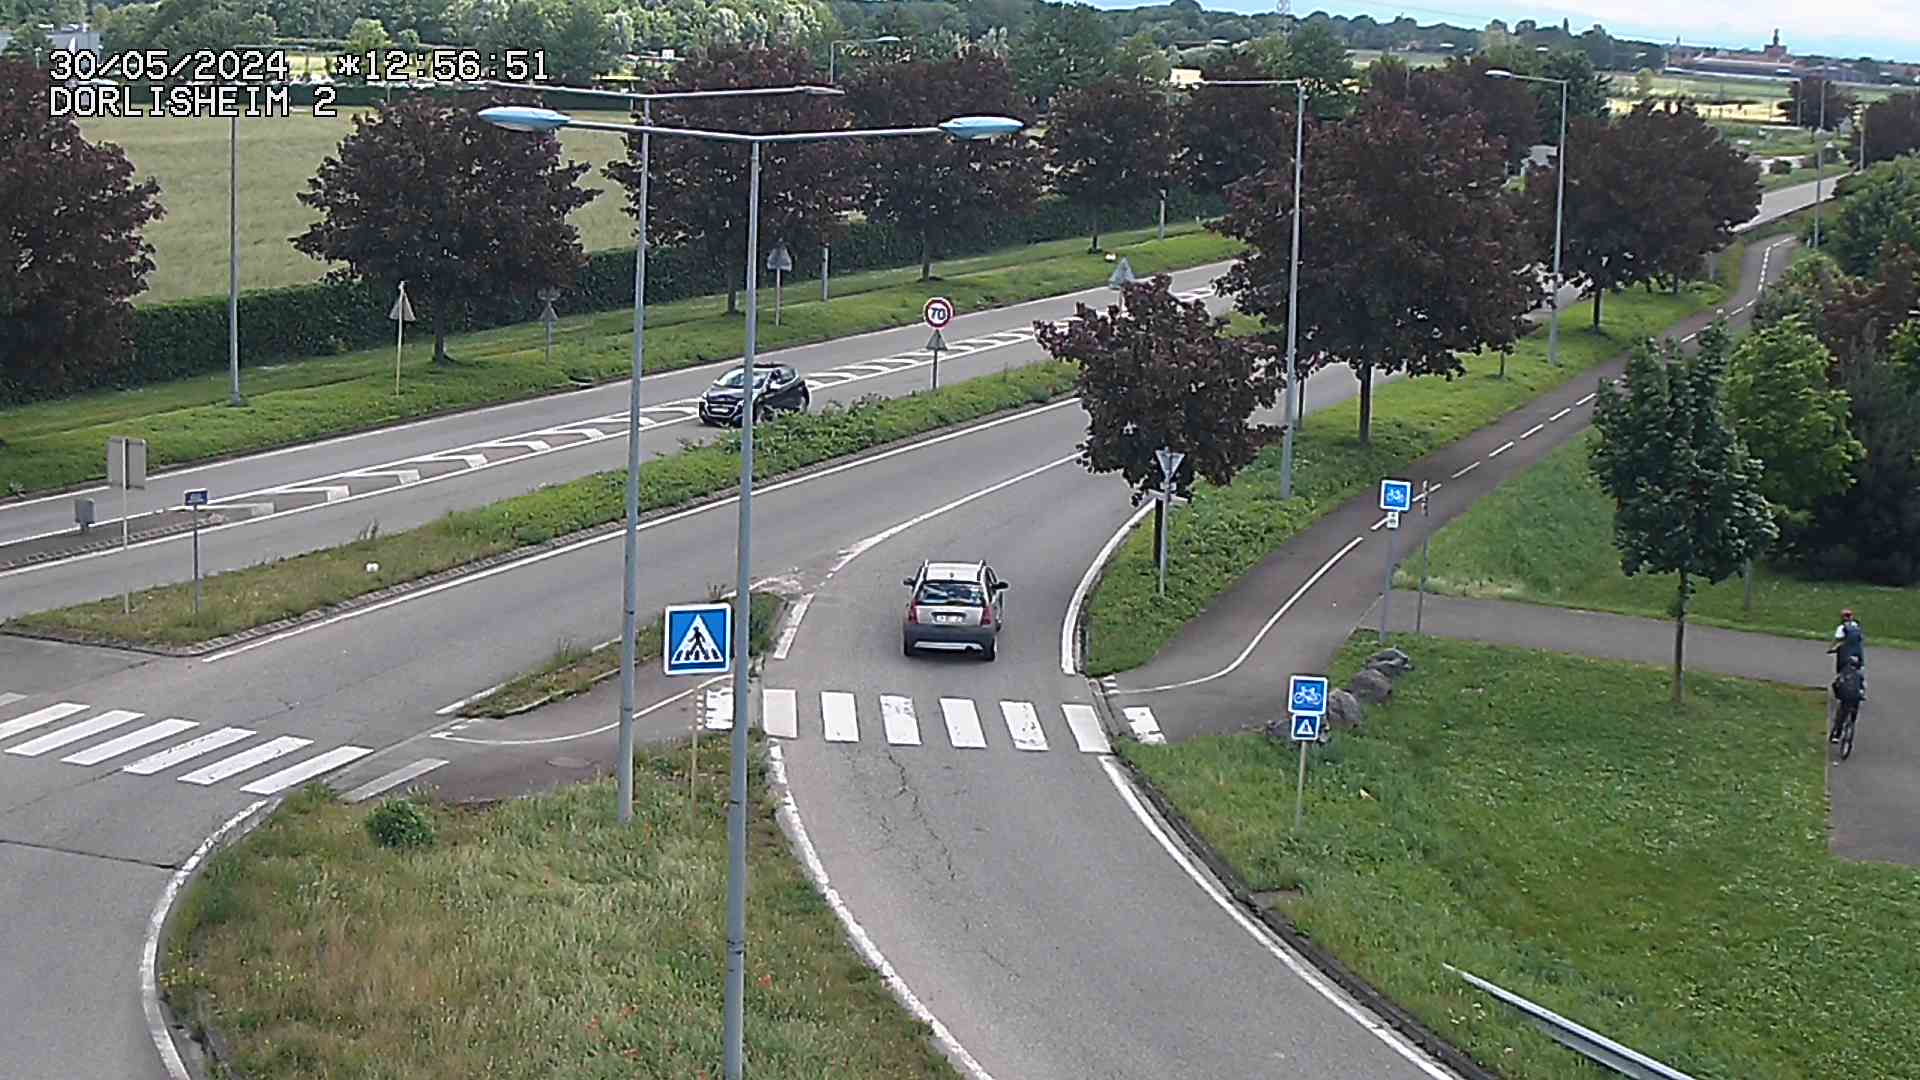 <h2>Webcam à Dorlisheim, au sud de Molsheim, au niveau du rond-point menant à l'A352. Caméra située à la jonction entre la D392, la D500 et la D2422. Vue orientée vers Altorf et Strasbourg</h2>